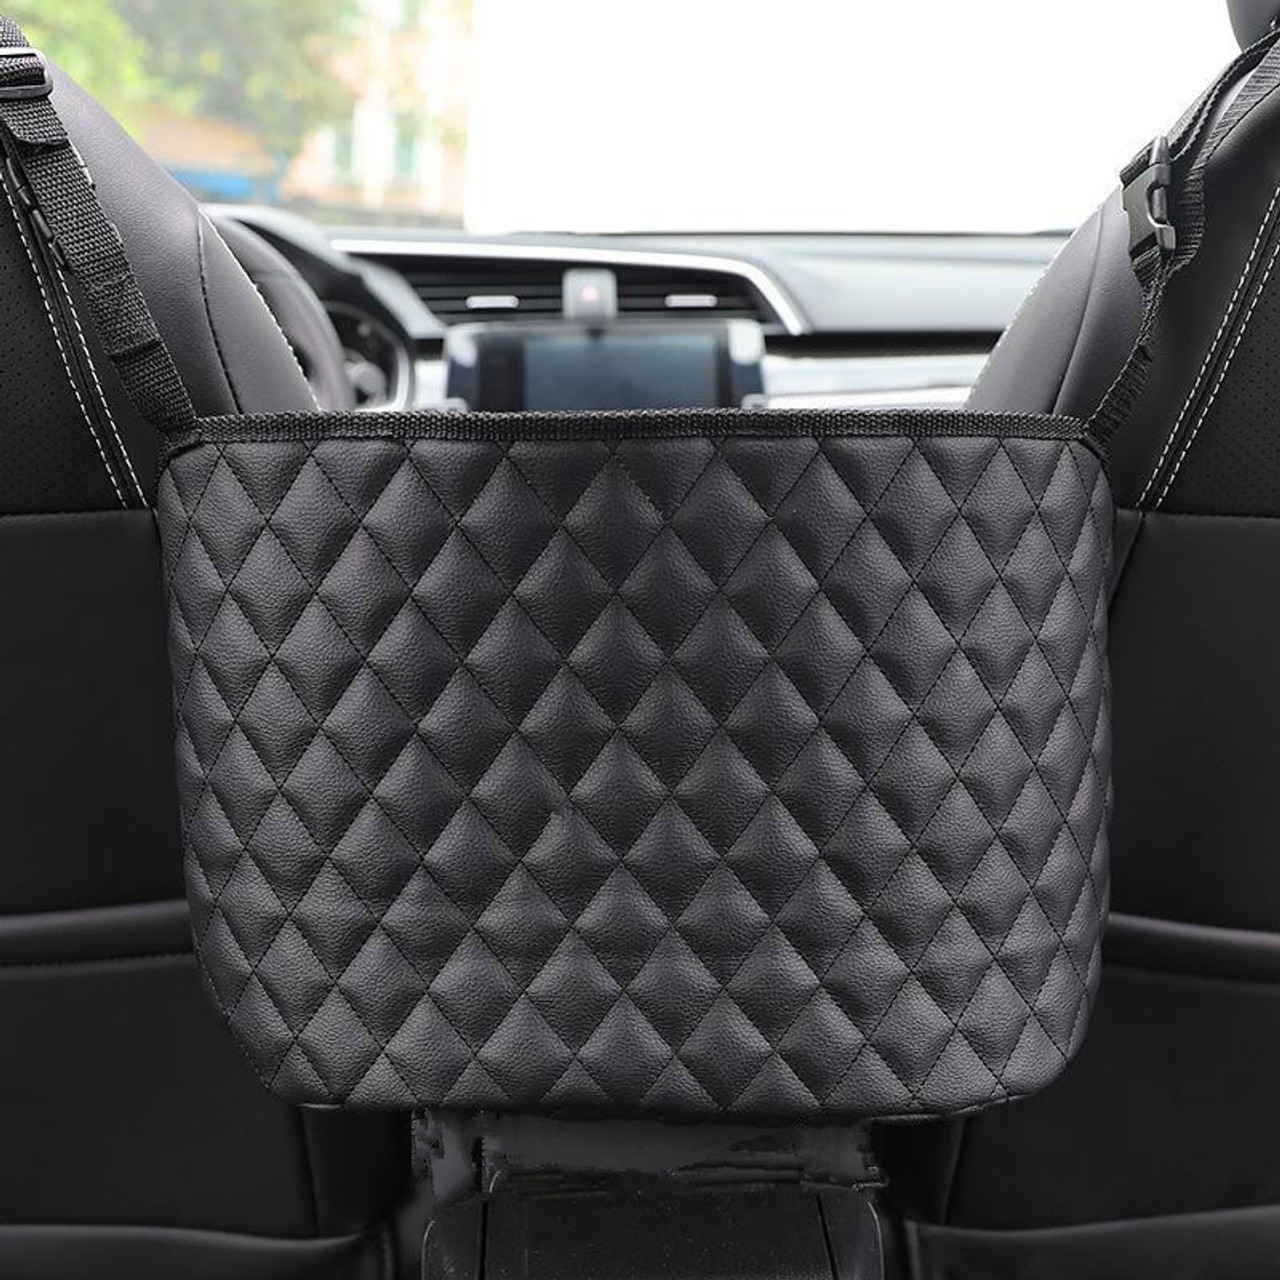 LEQC Bag Holder For Car, Car Net Pocket Handbag Holder, Car Purse Holder  Between Seats, Car Seat Organizer, Pu Leather Hanging Storage Bag, Storage